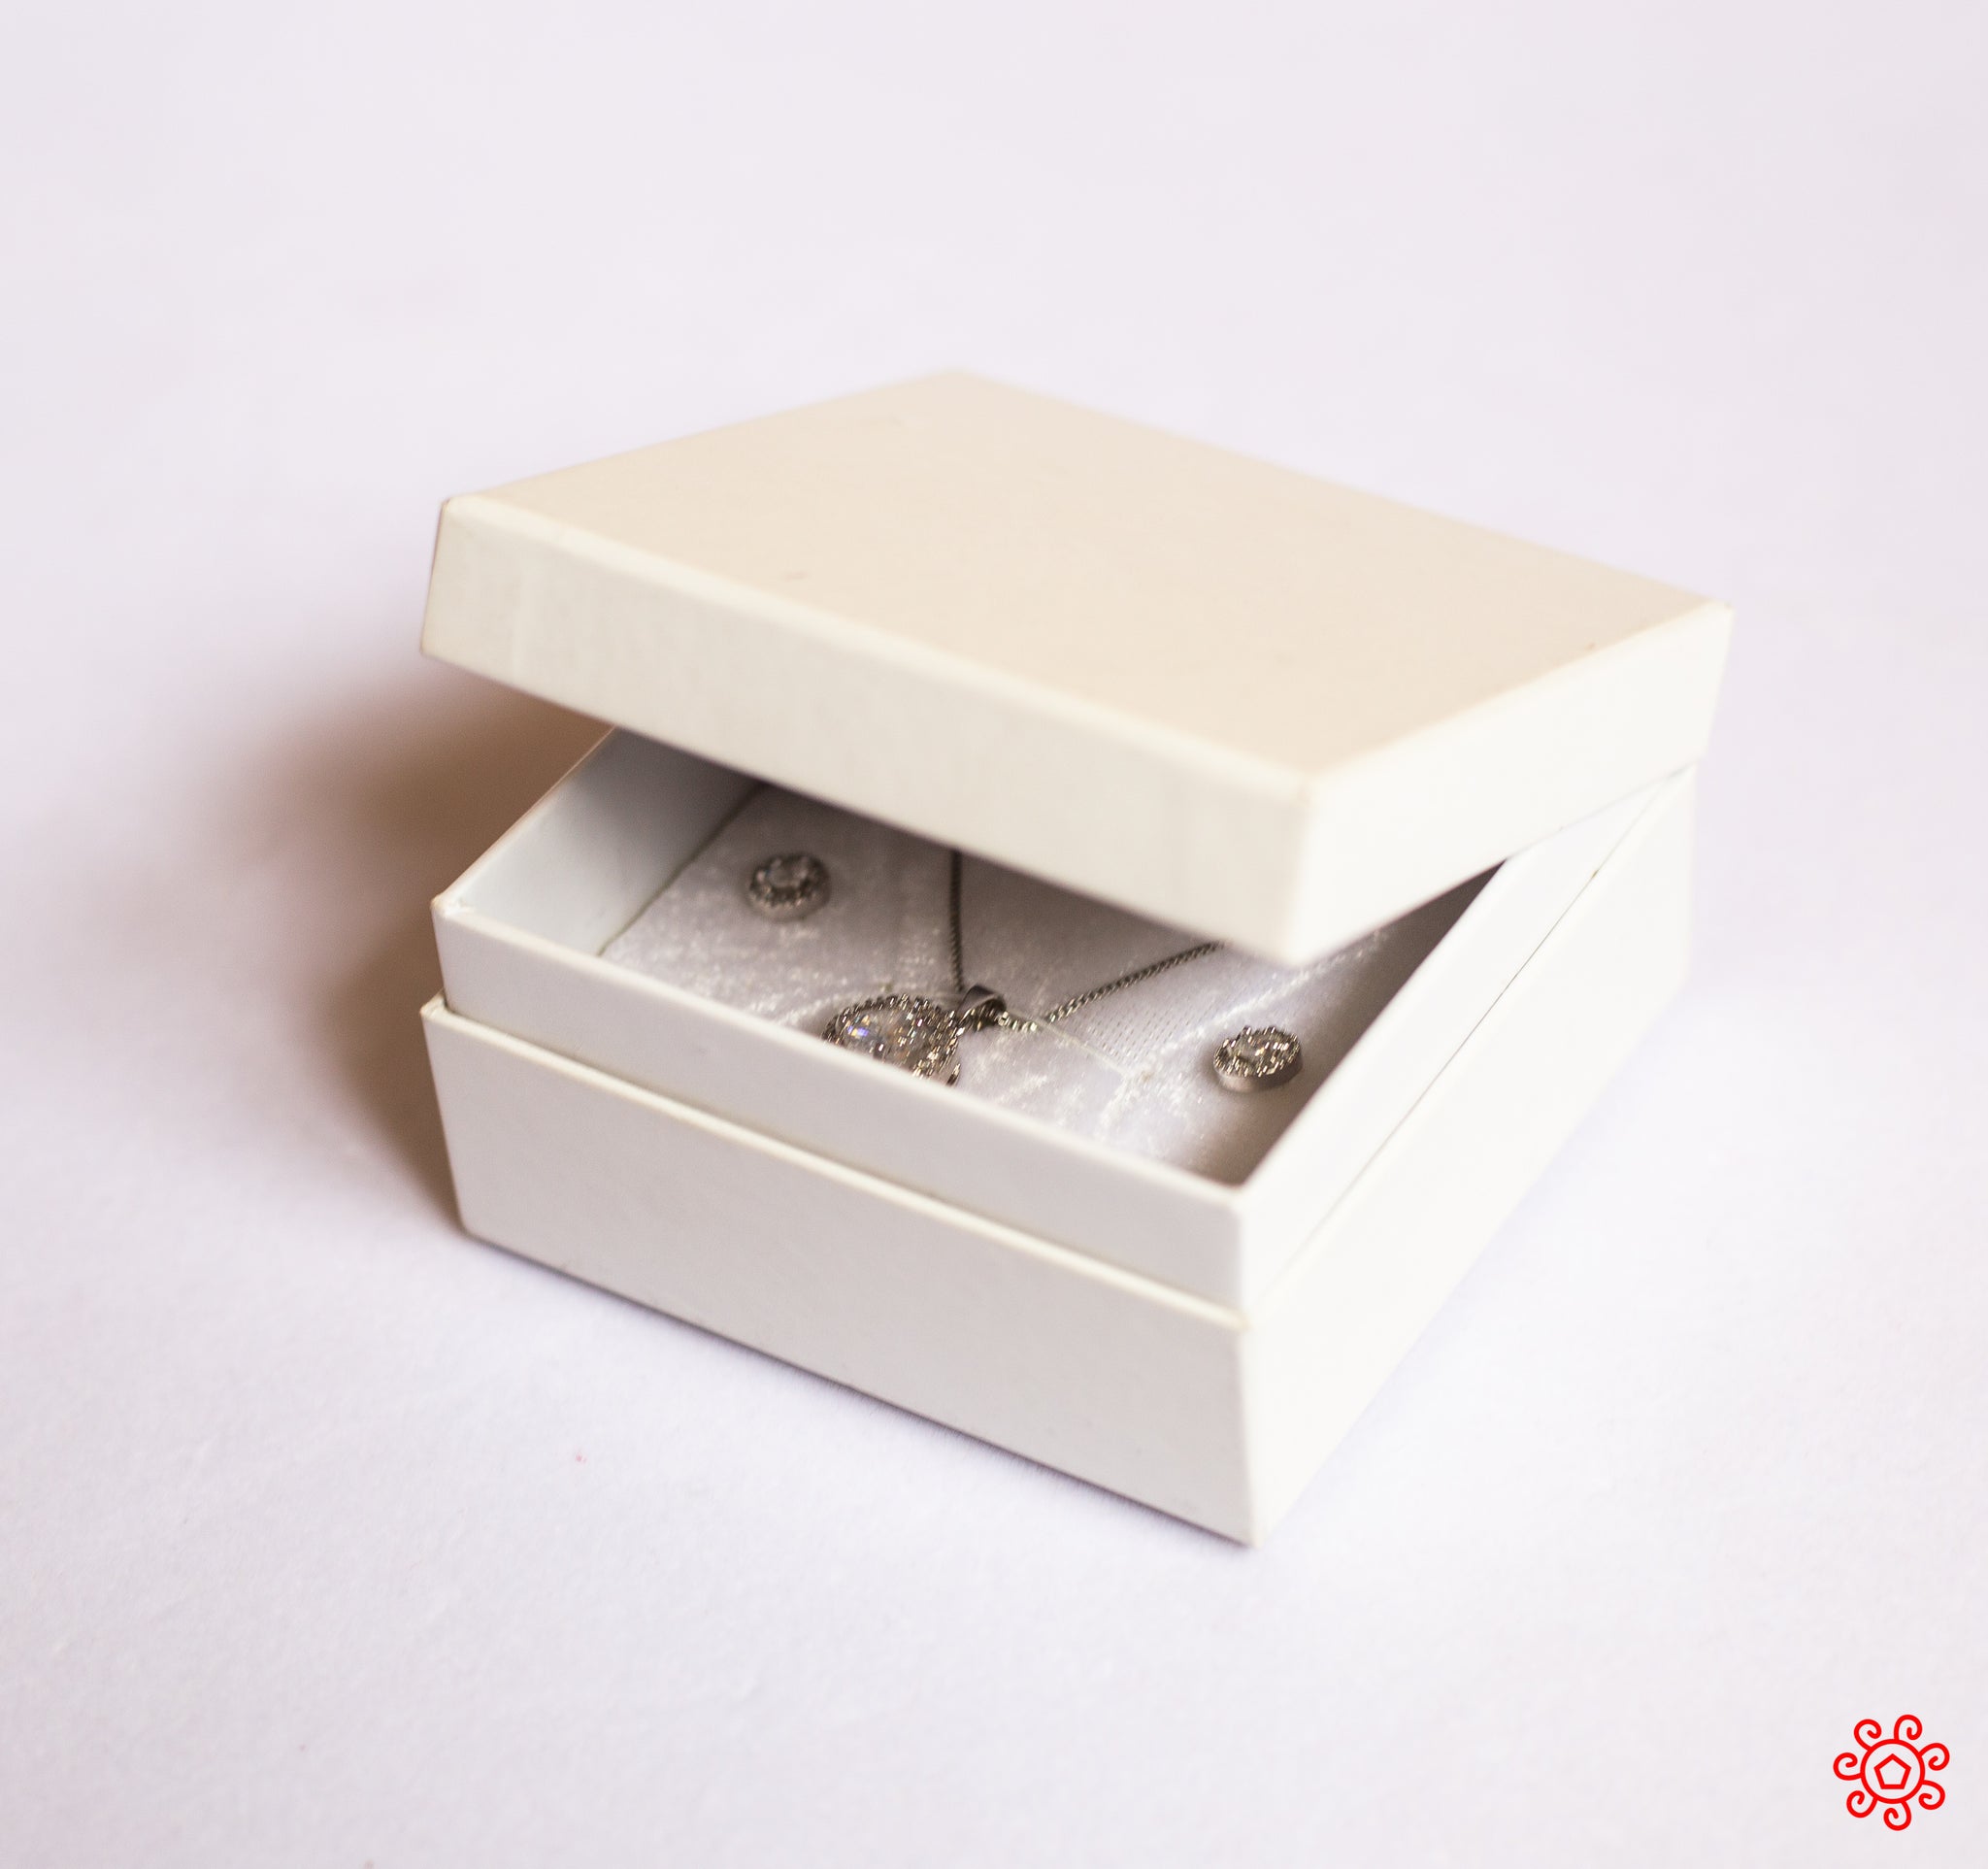 Handmade Jewelry Box - HDBX115